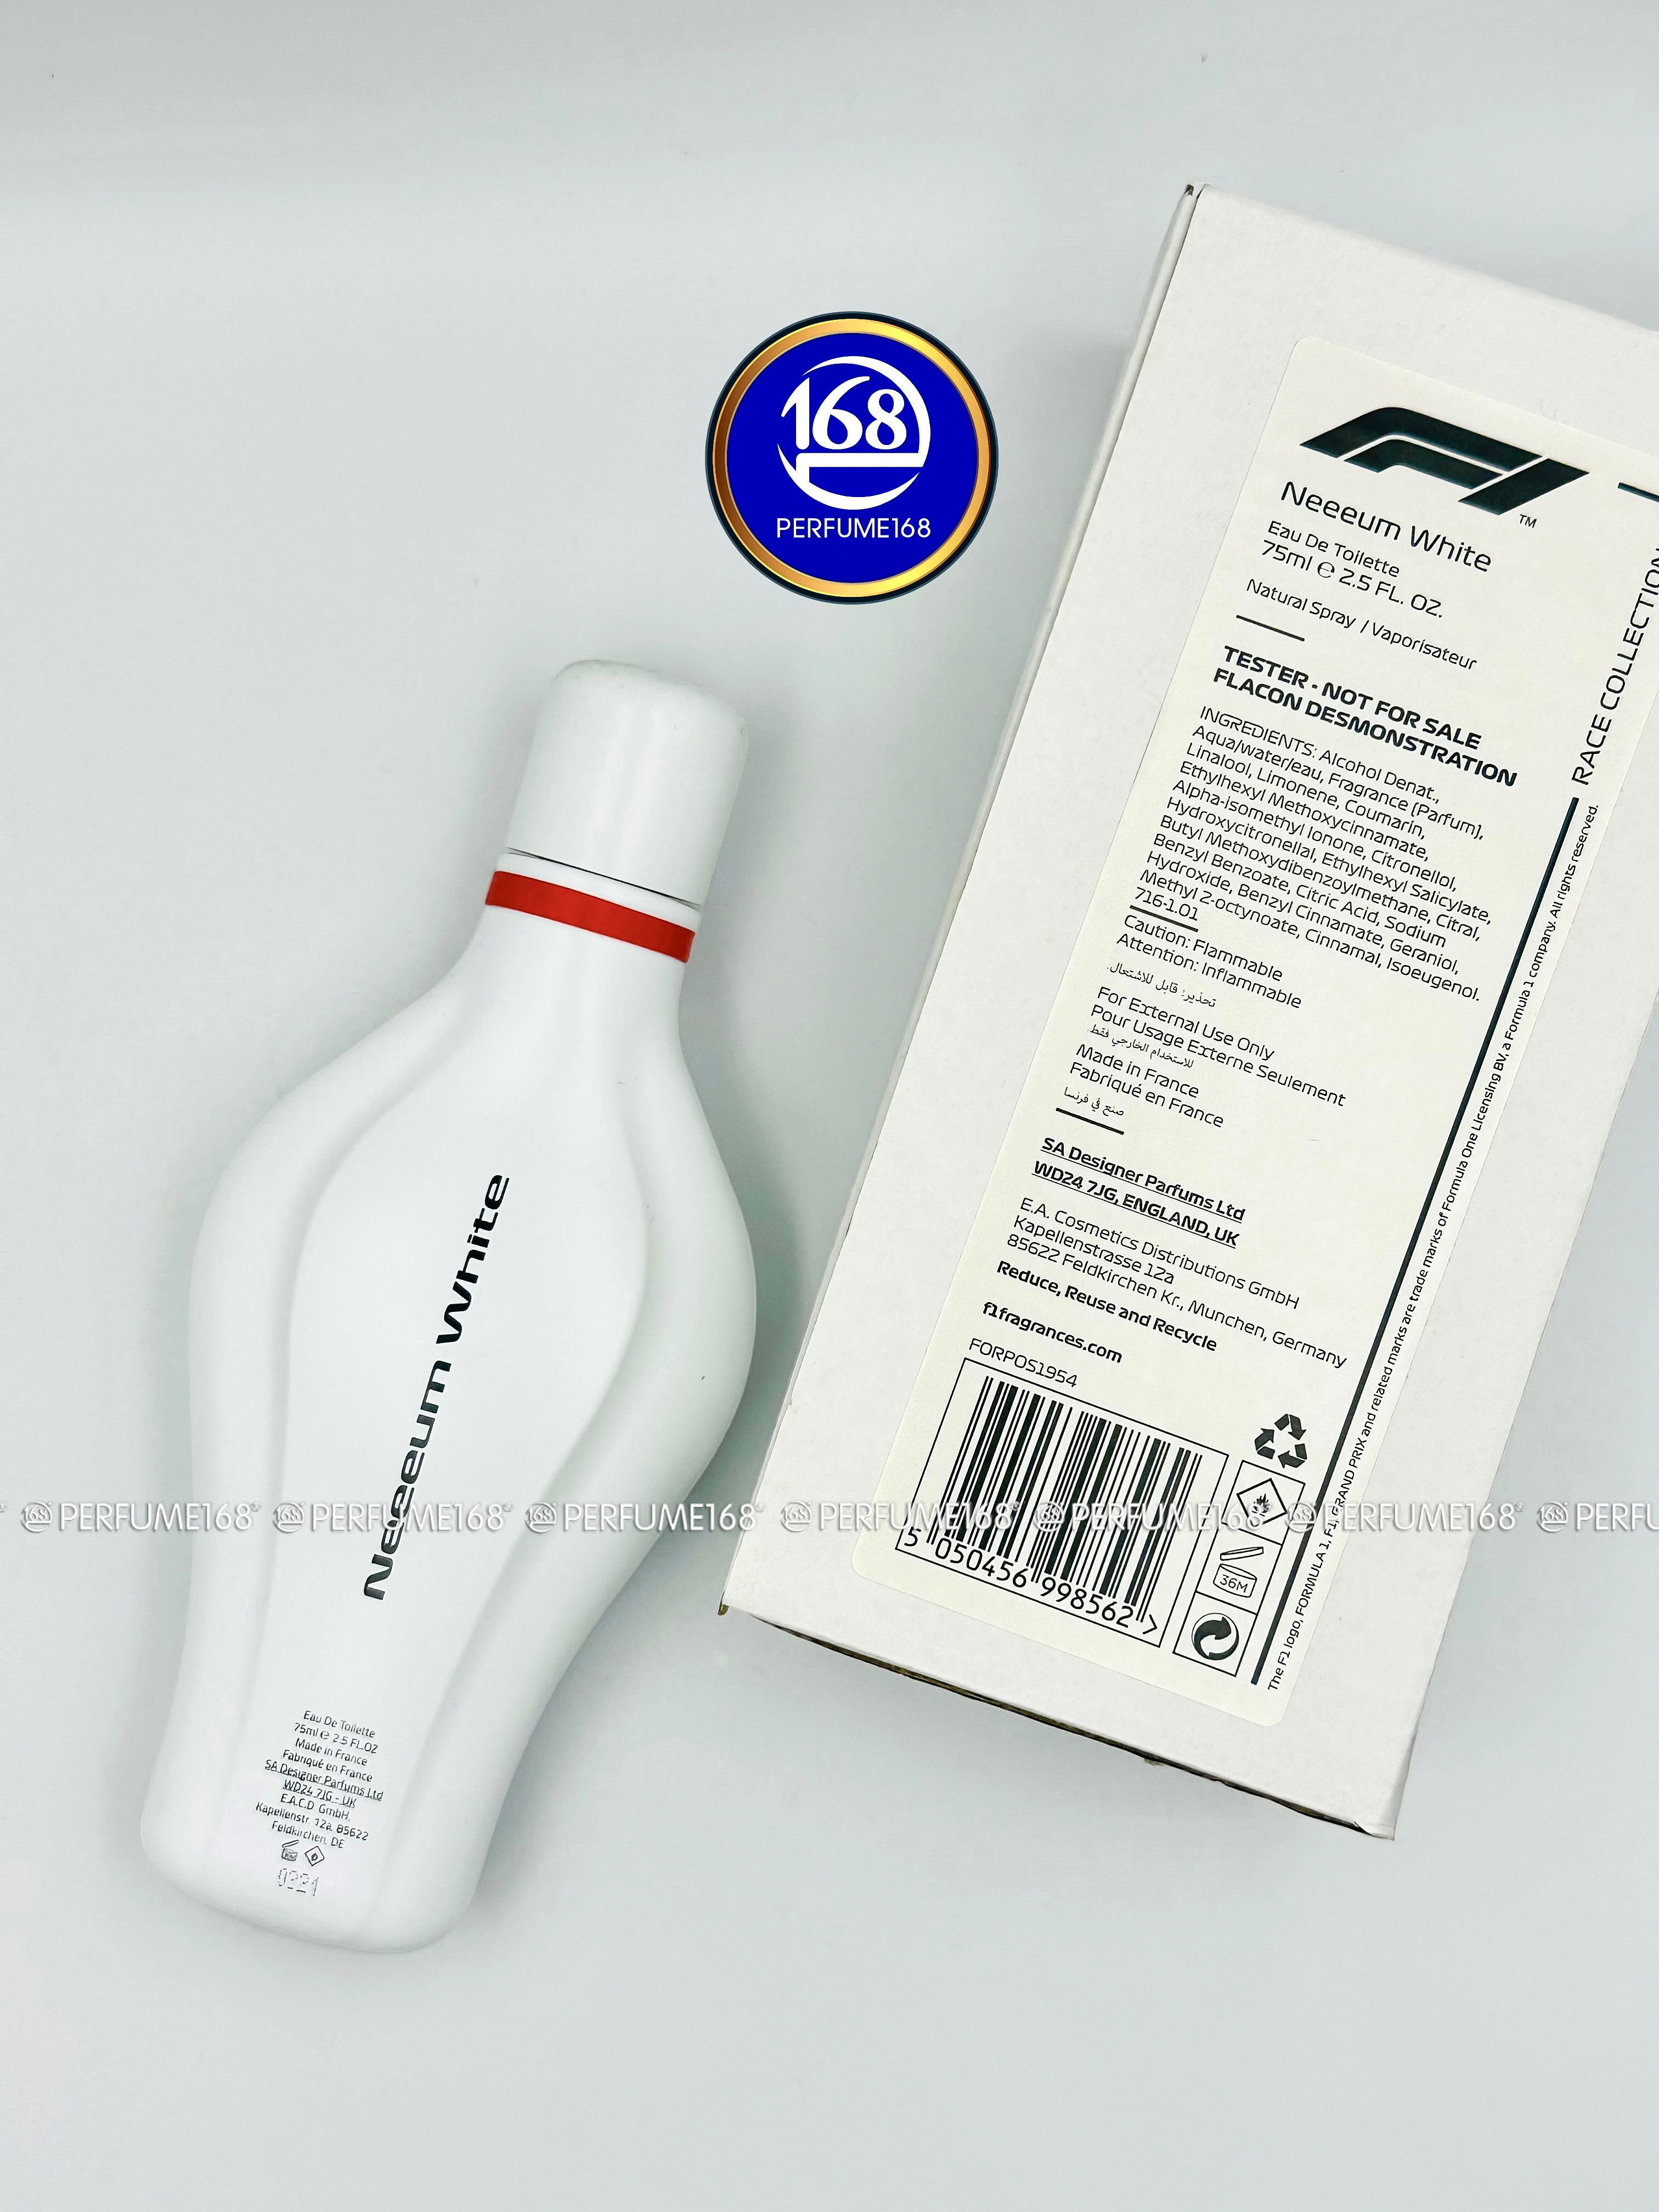 Perfume168 tại Mỹ…Giá tốt Formula 1 hãng hoa khẩu - White Pháp, F1 Neeeum 100% chính nhập Nước